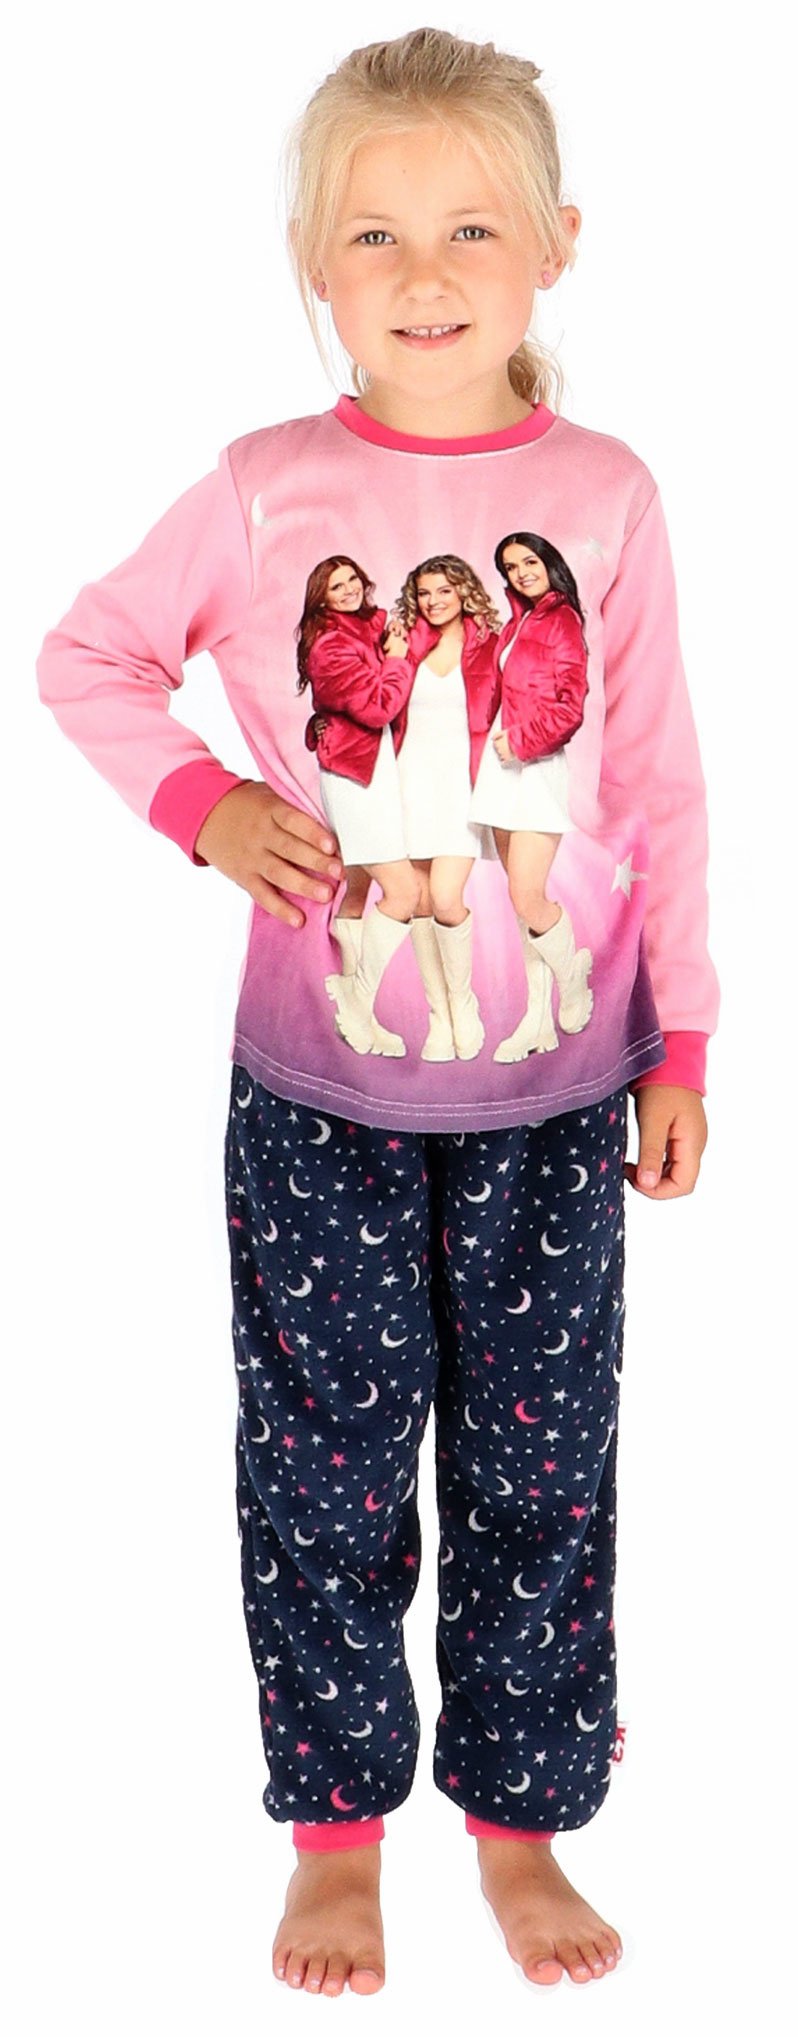 Vooruitgang Uitdrukkelijk Verandert in Meisjes pyjama K3 jasje kleur roze velours & broek antracietgrijs met print  fleecestof - Bodyfashion Born